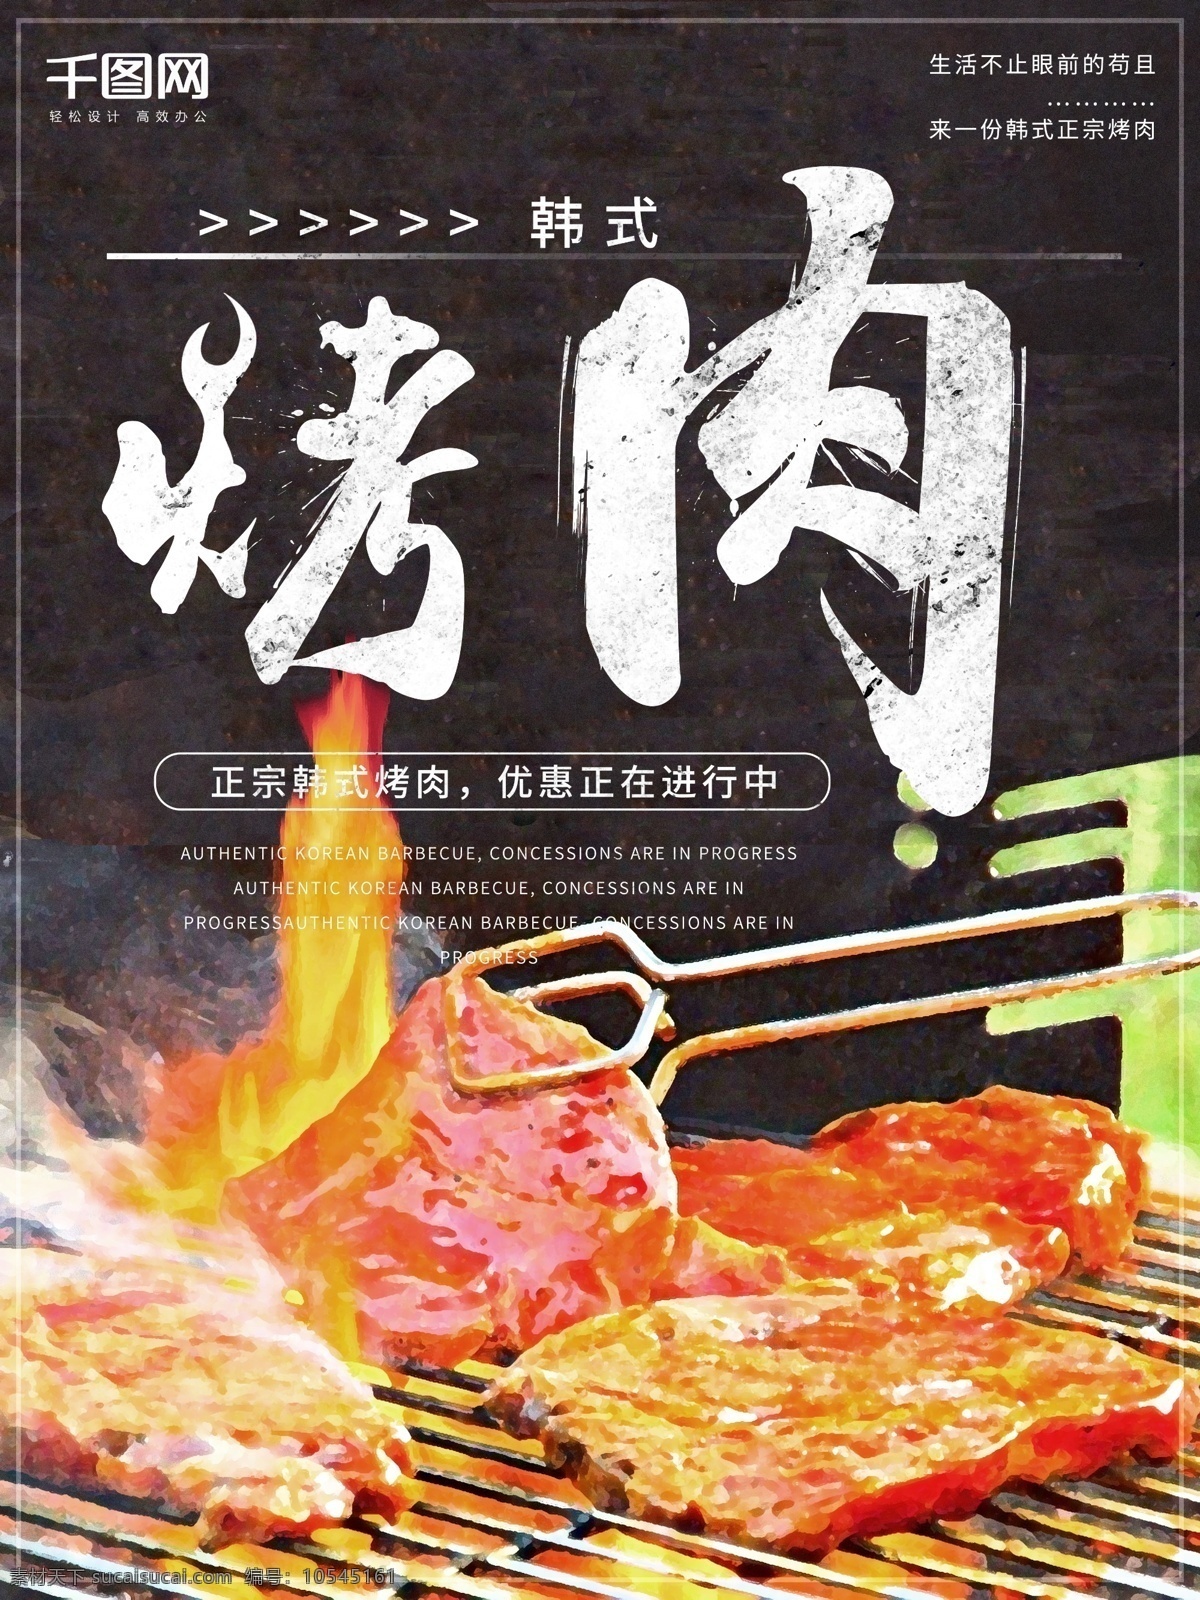 原创 插画 韩式 烤肉 宣传 促销 海报 餐厅 餐饮 简约 连锁餐饮